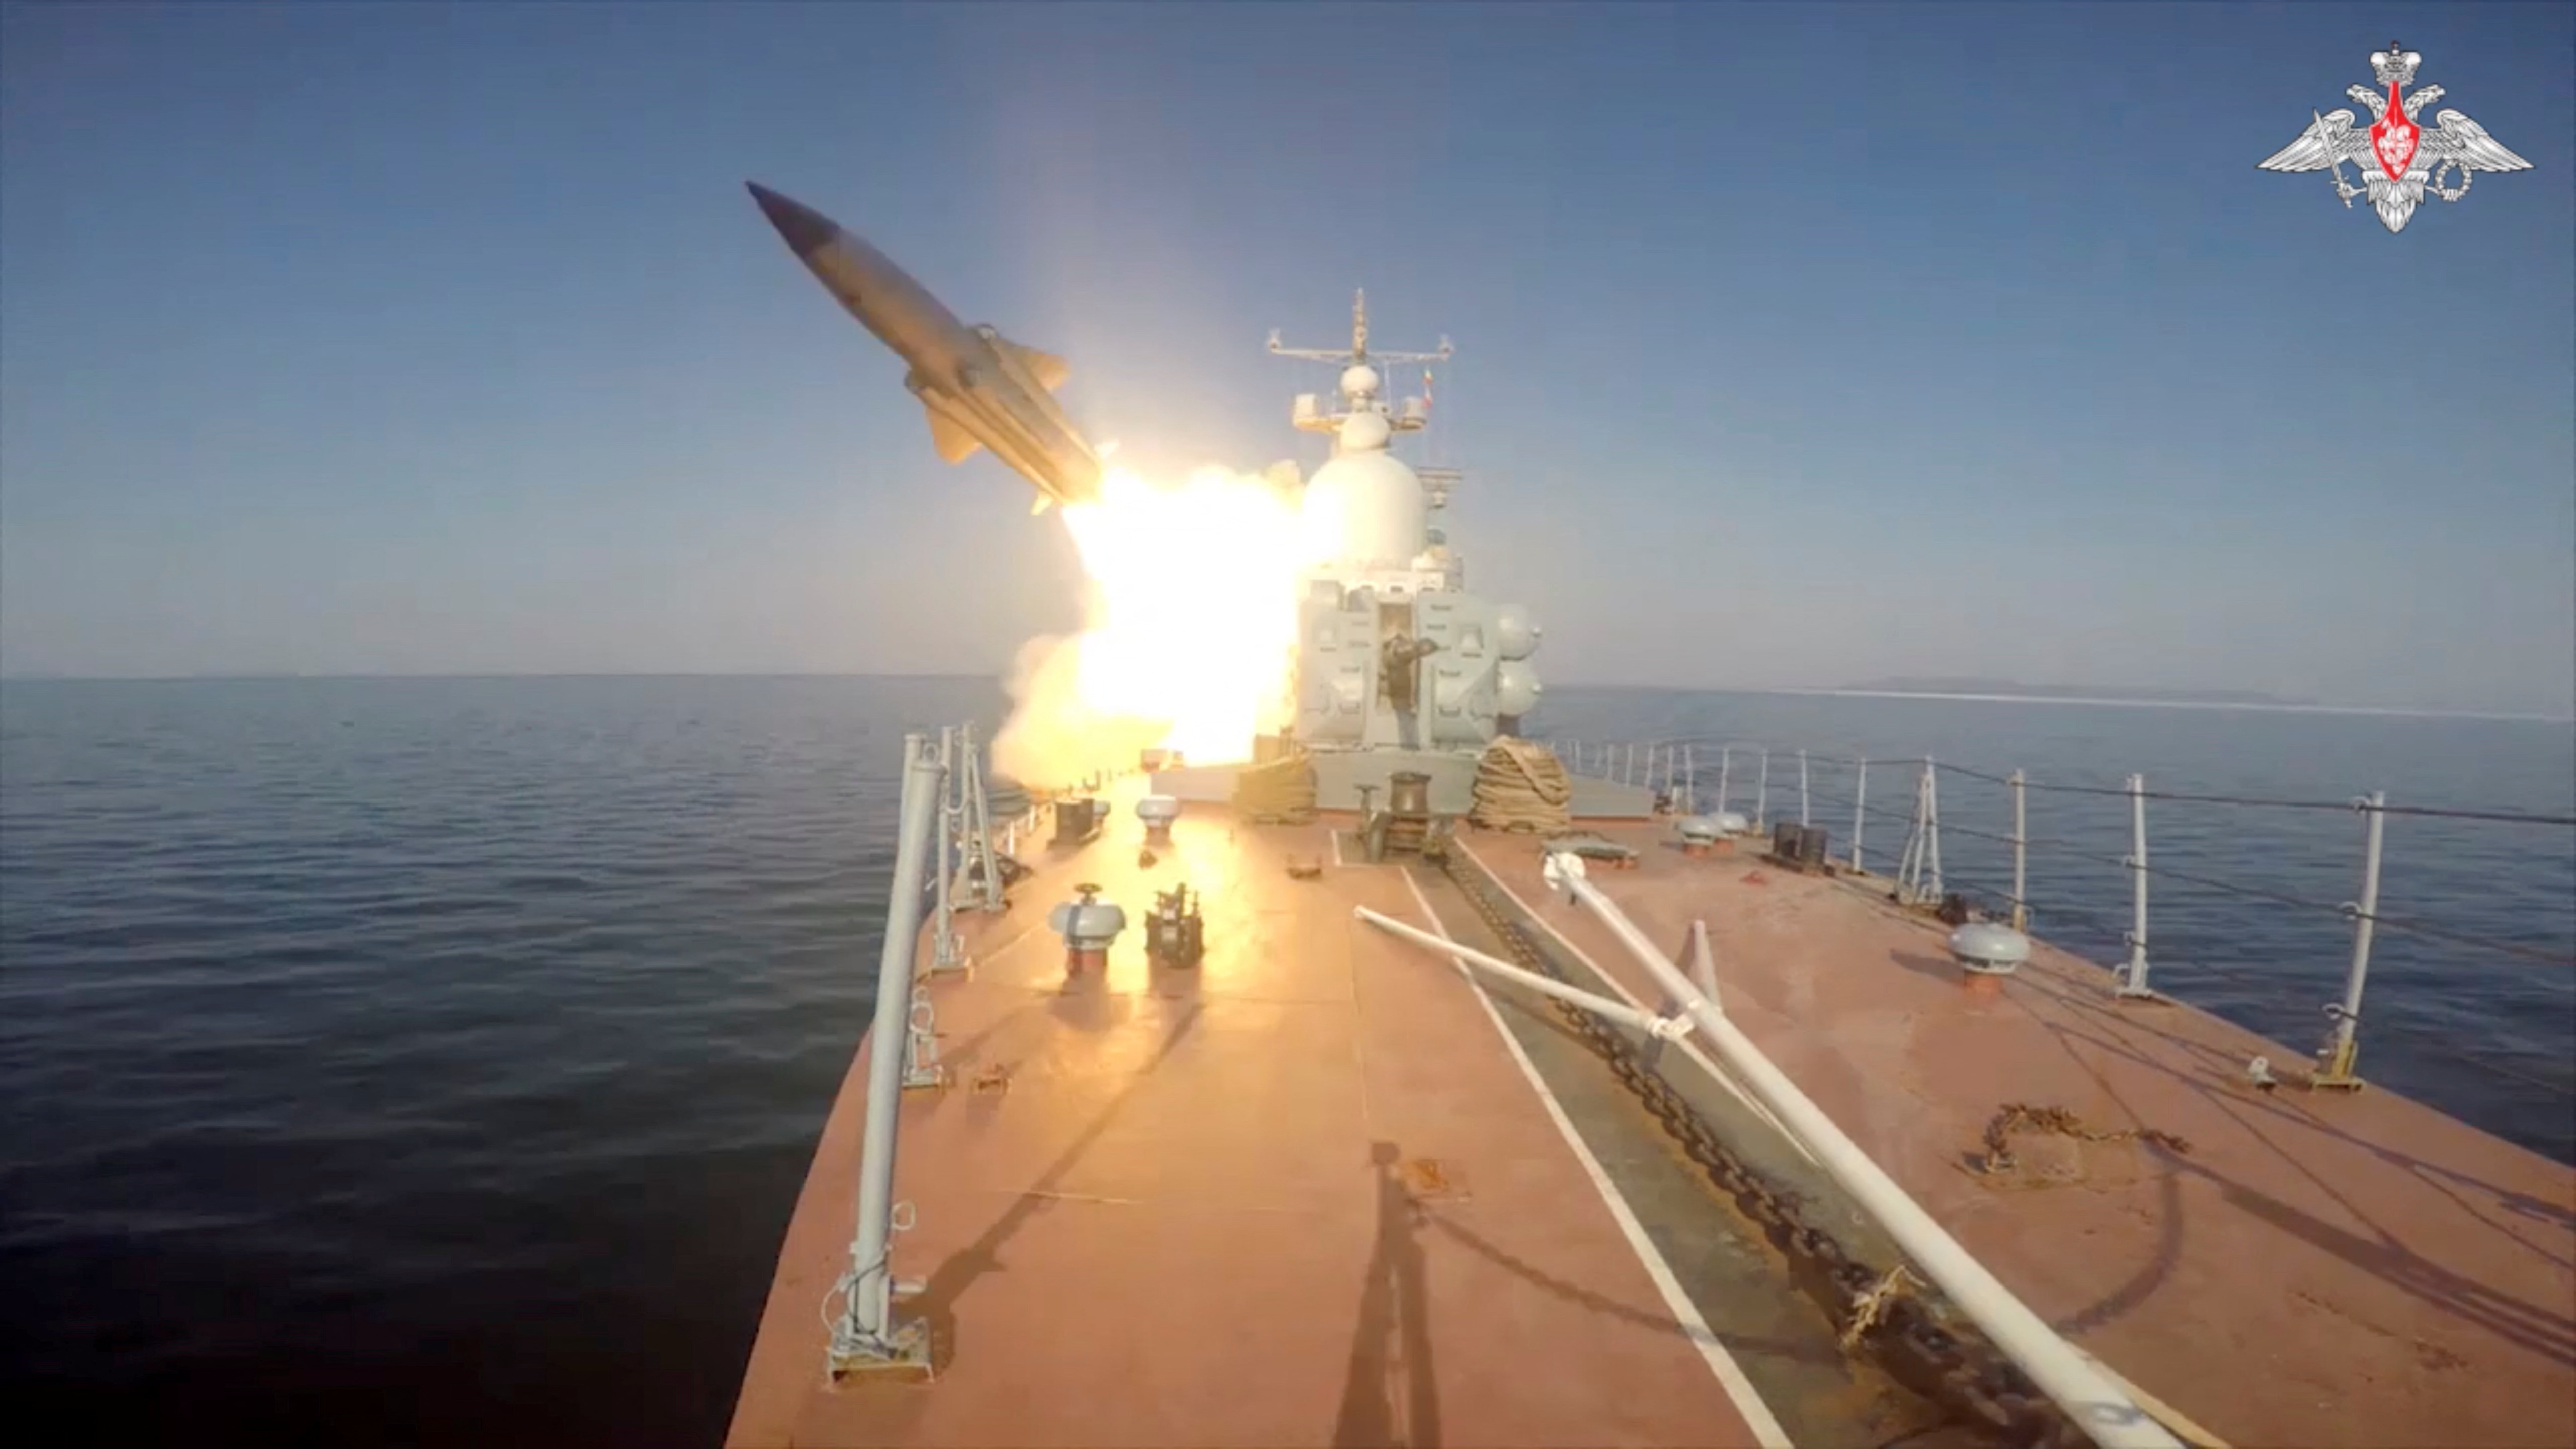 Moscú señaló que su aviación naval supervisó “la seguridad del ejercicio de combate”. (Ministerio de Defensa de Rusia / REUTERS)